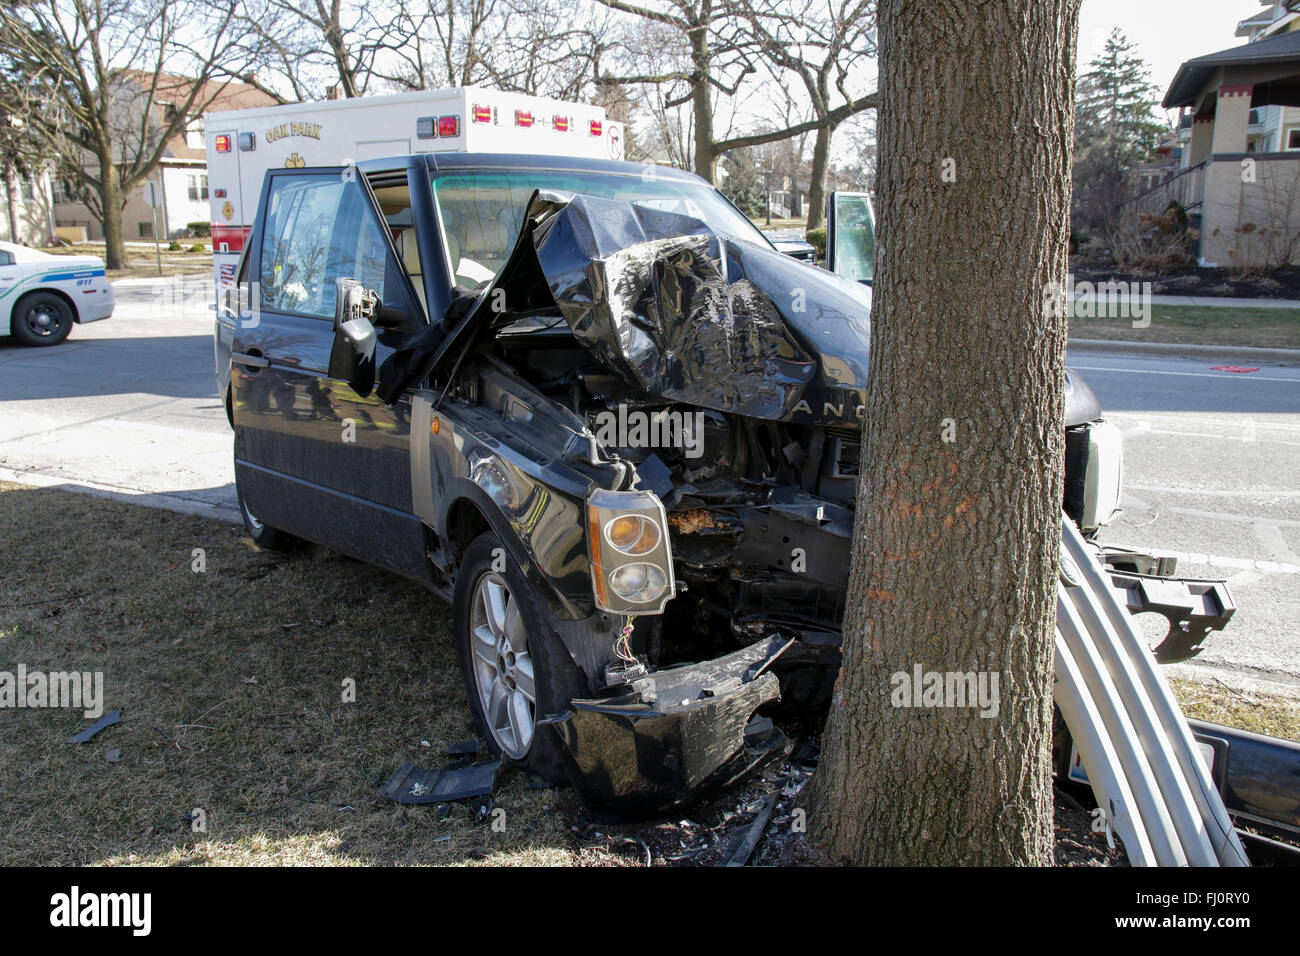 Oak Park, Illinois, USA. 27 février 2016. Une Range Rover se repose sur un arbre de la promenade froissé à l'intersection de la rue Division et Elmwood Ave dans cette banlieue ouest de Chicago. De toute évidence, les SUV ont quitté la route sans ralentir, conduisant à de graves dommages et l'extrémité avant des débris de la voiture roulant tout à fait un peu plus loin le long de la Division. Heureusement, il n'y a pas eu de blessures graves pour le conducteur et les passagers, dont un bébé dans un siège de voiture. Les zones fusibles et airbags dans cette automobile moderne dans toute la probabilité de sauver des vies. Credit : Todd Bannor/Alamy Live News Banque D'Images